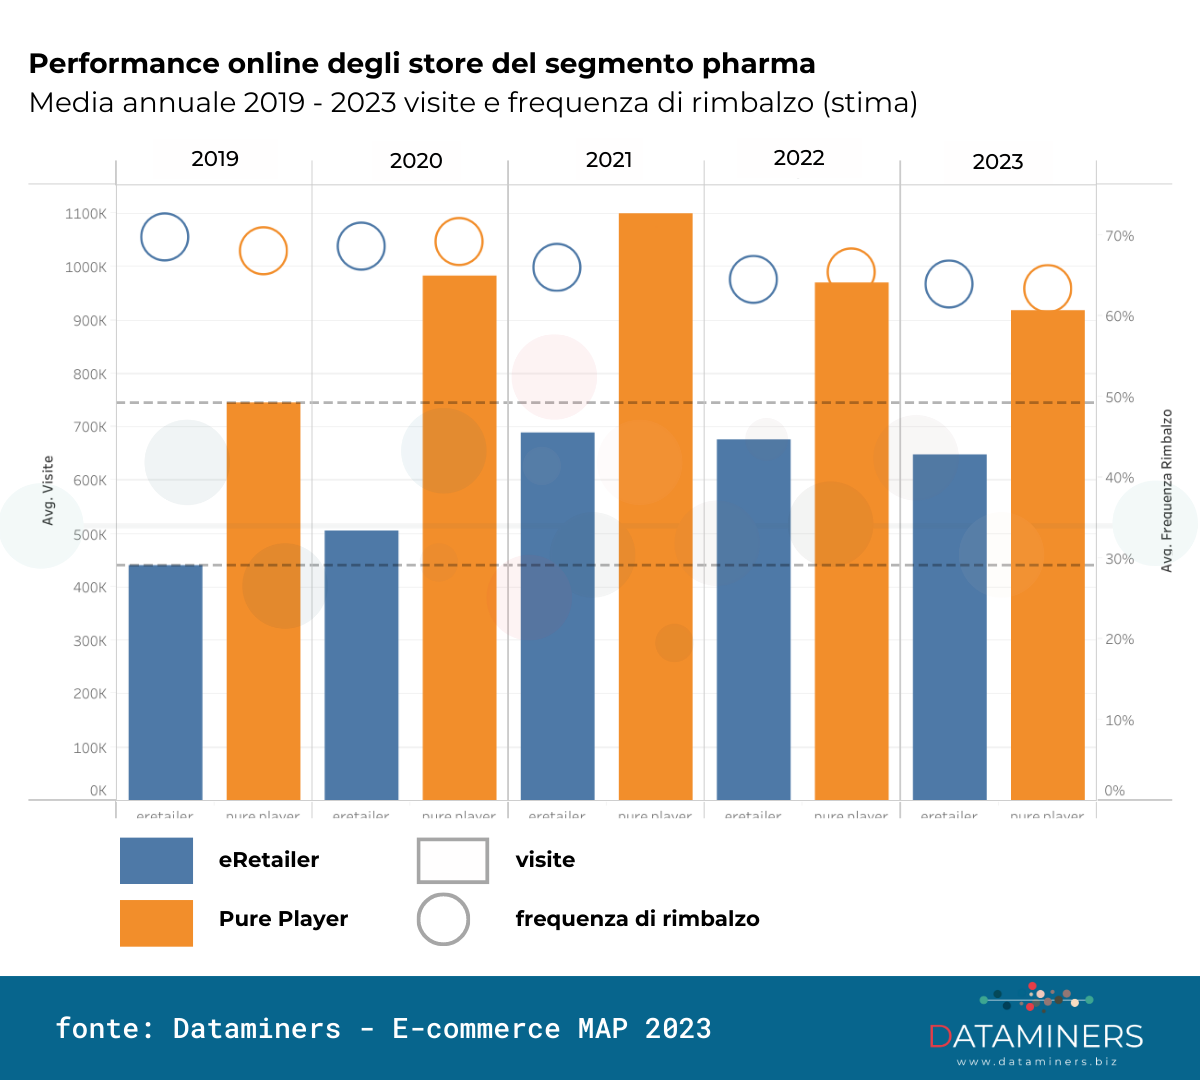 Farmacie online, Dataminers: cresce la fedeltà dei clienti, ma la  navigazione è spasmodica